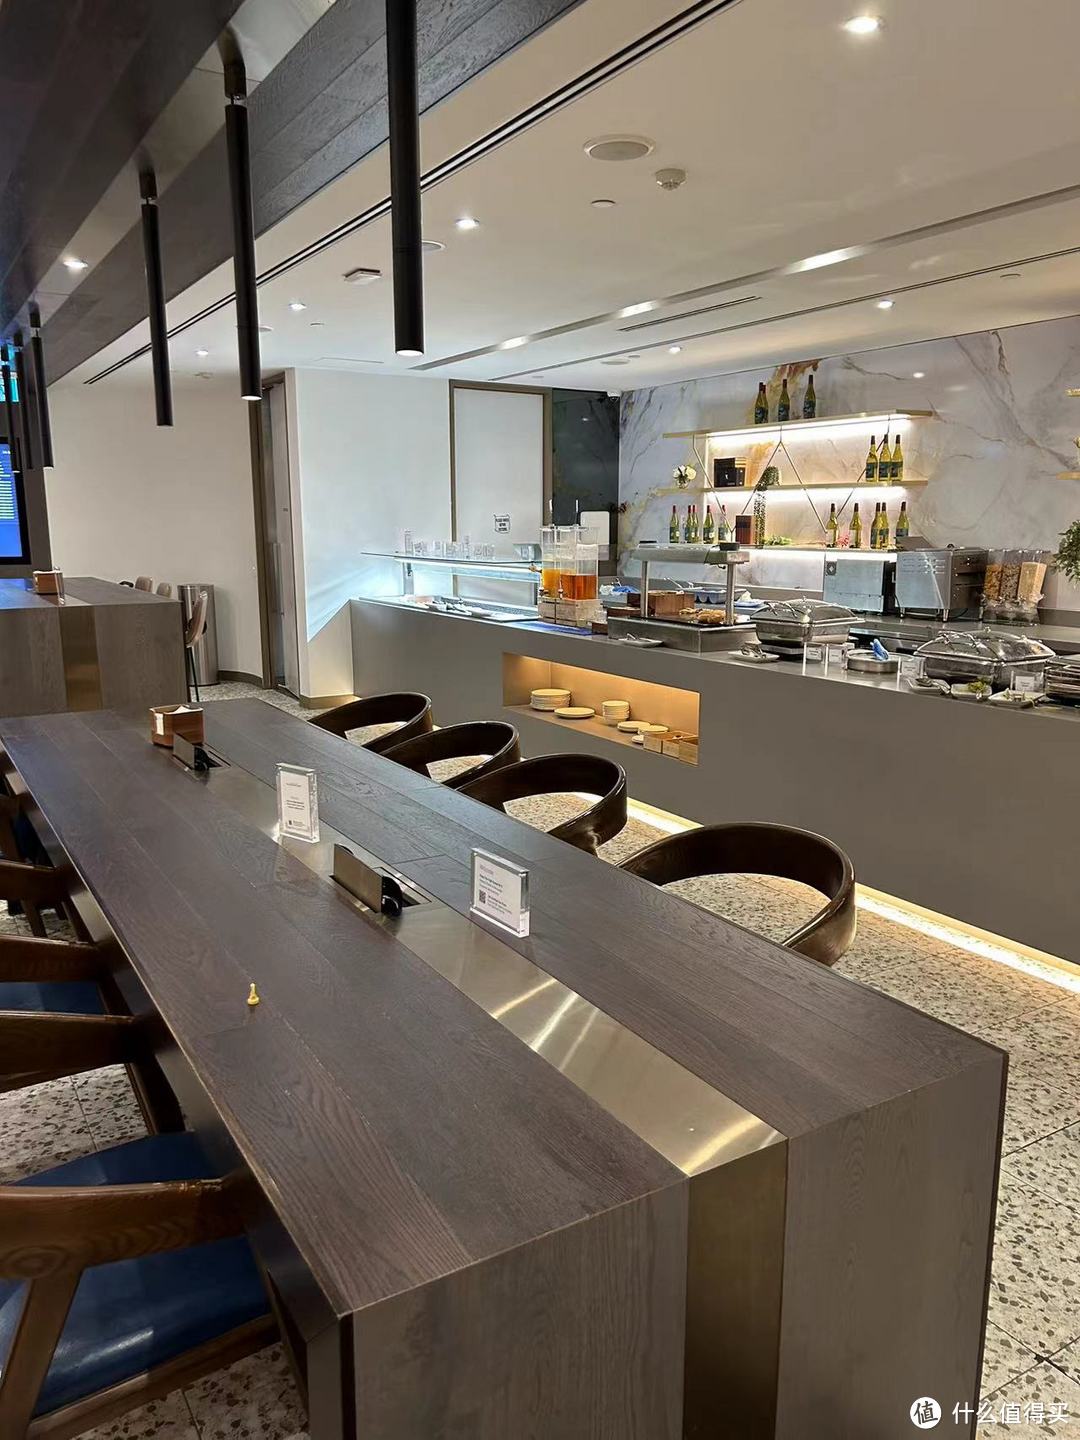 【墨尔本机场】T2航站楼 环亚贵宾休息室体验分享，16张图片。